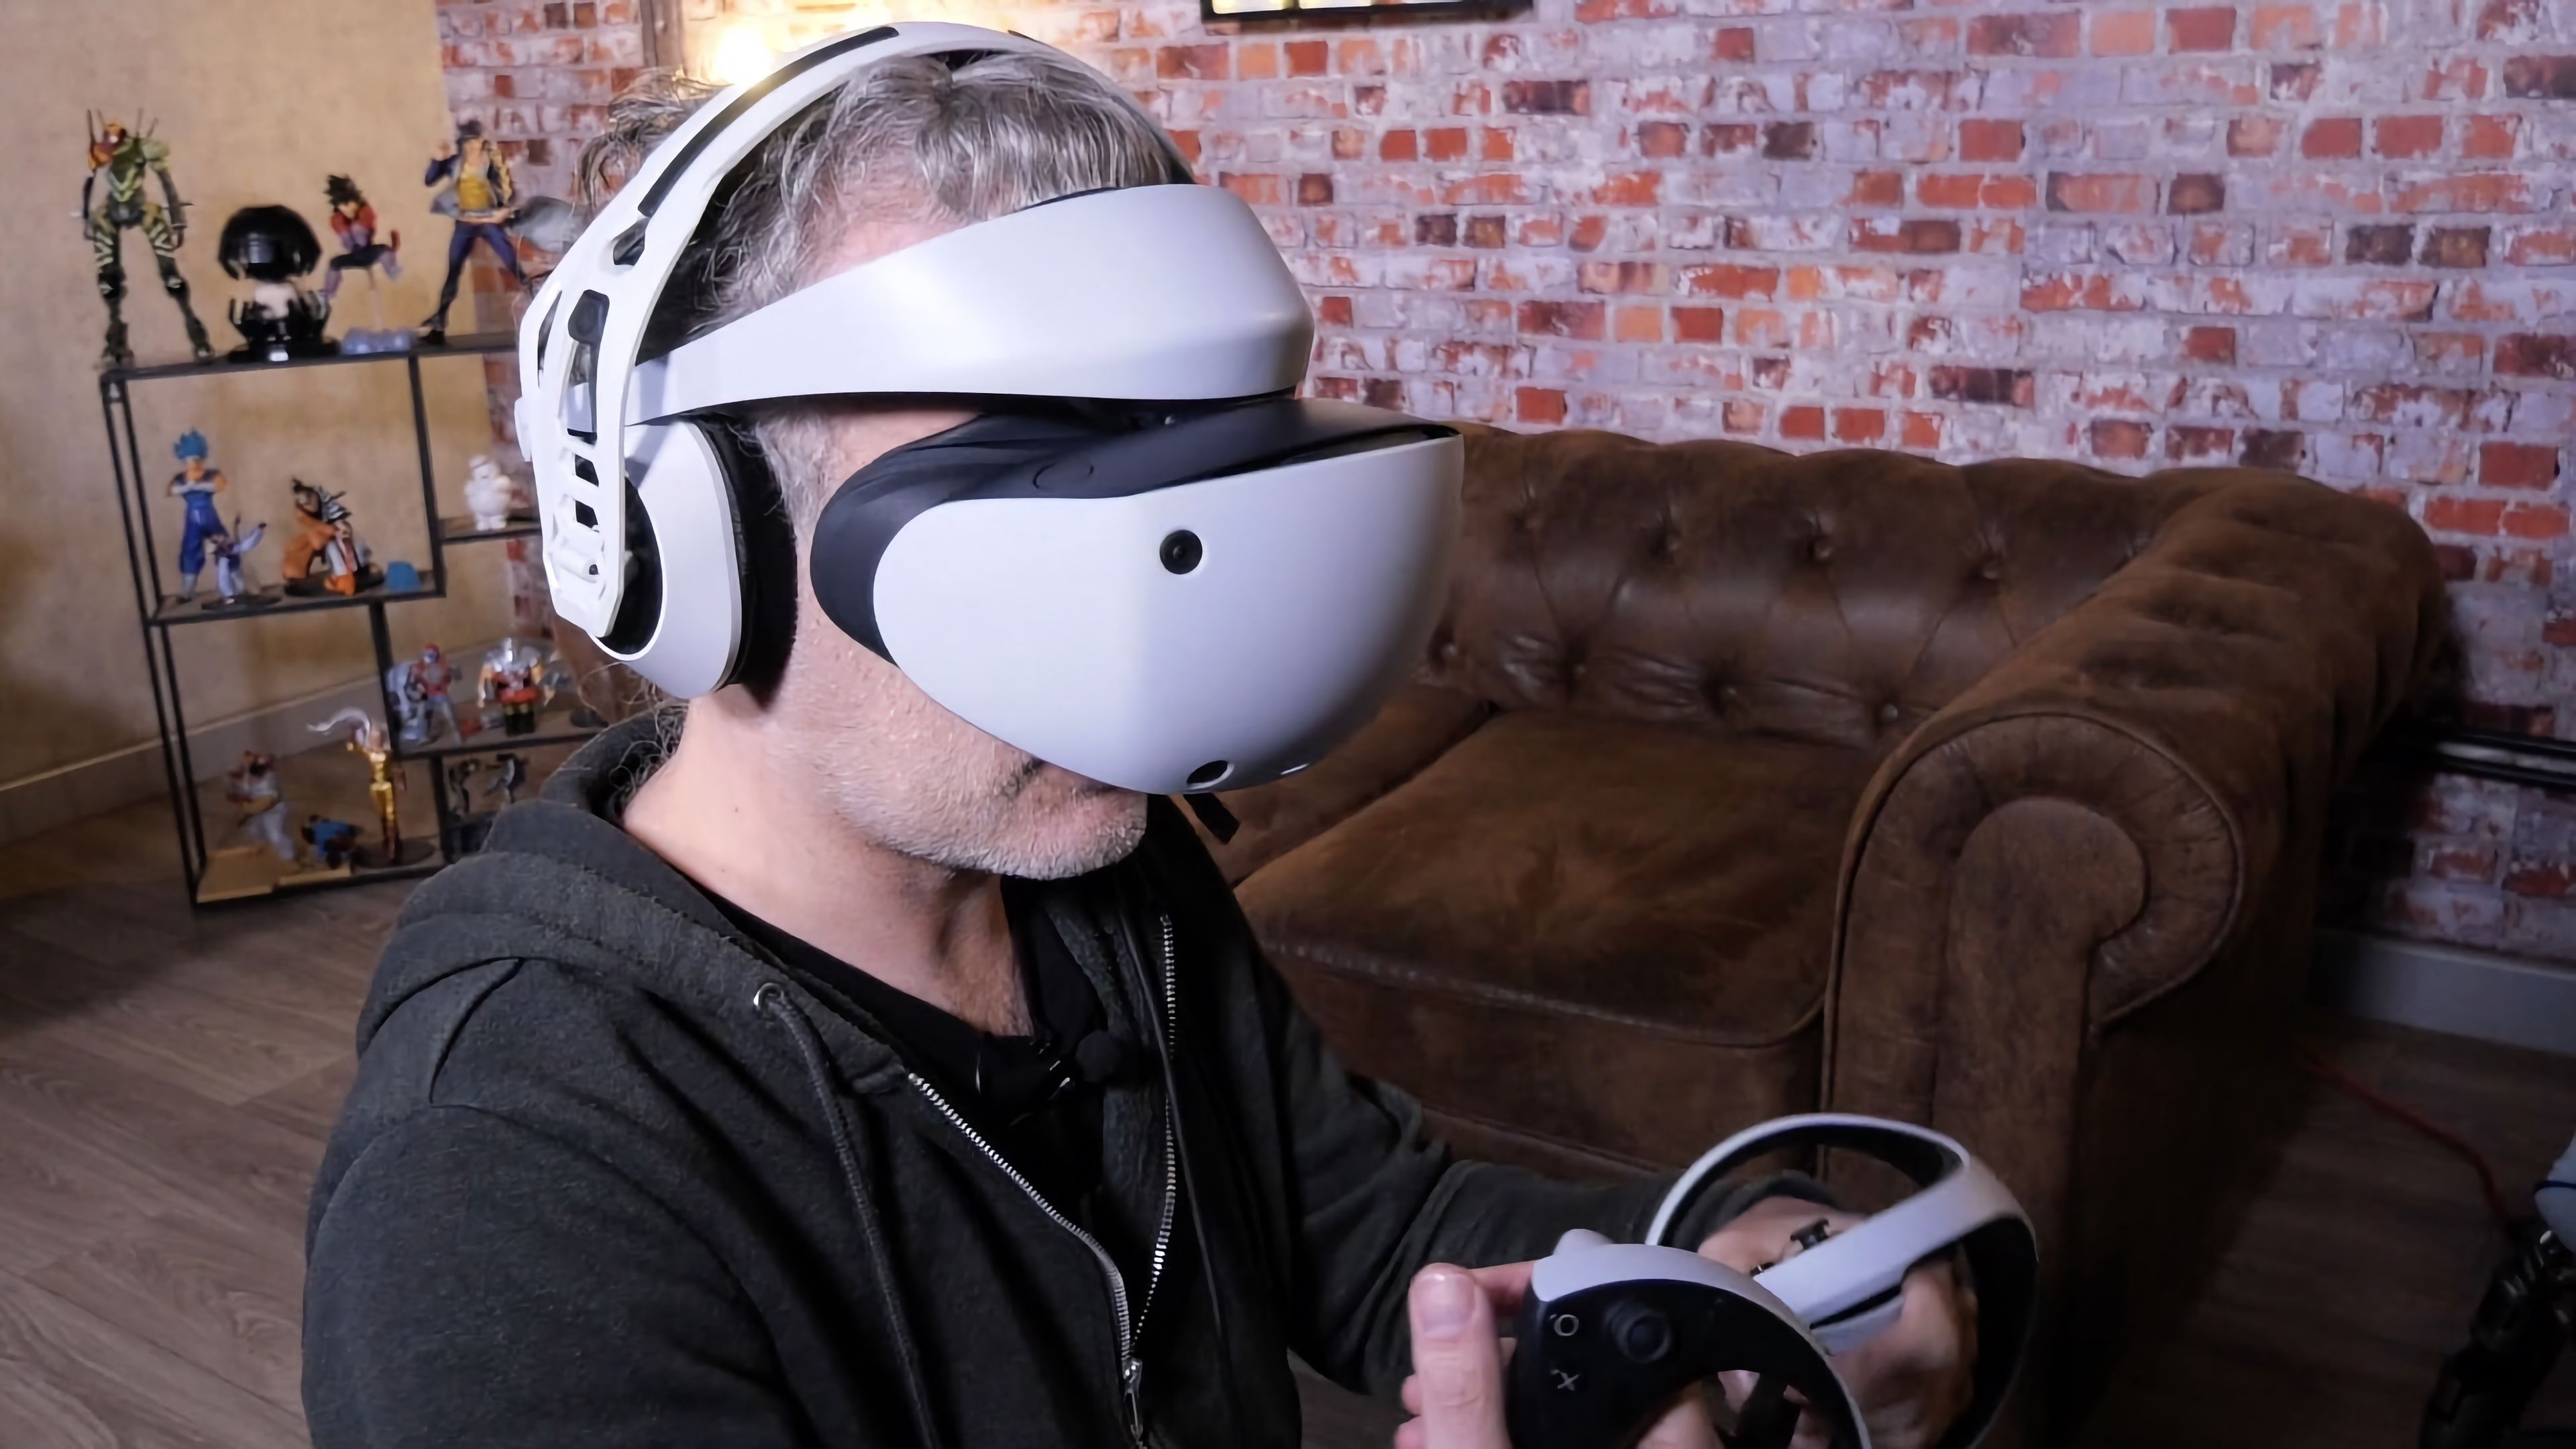 Así será la nueva generación de VR de PlayStation que llegará en